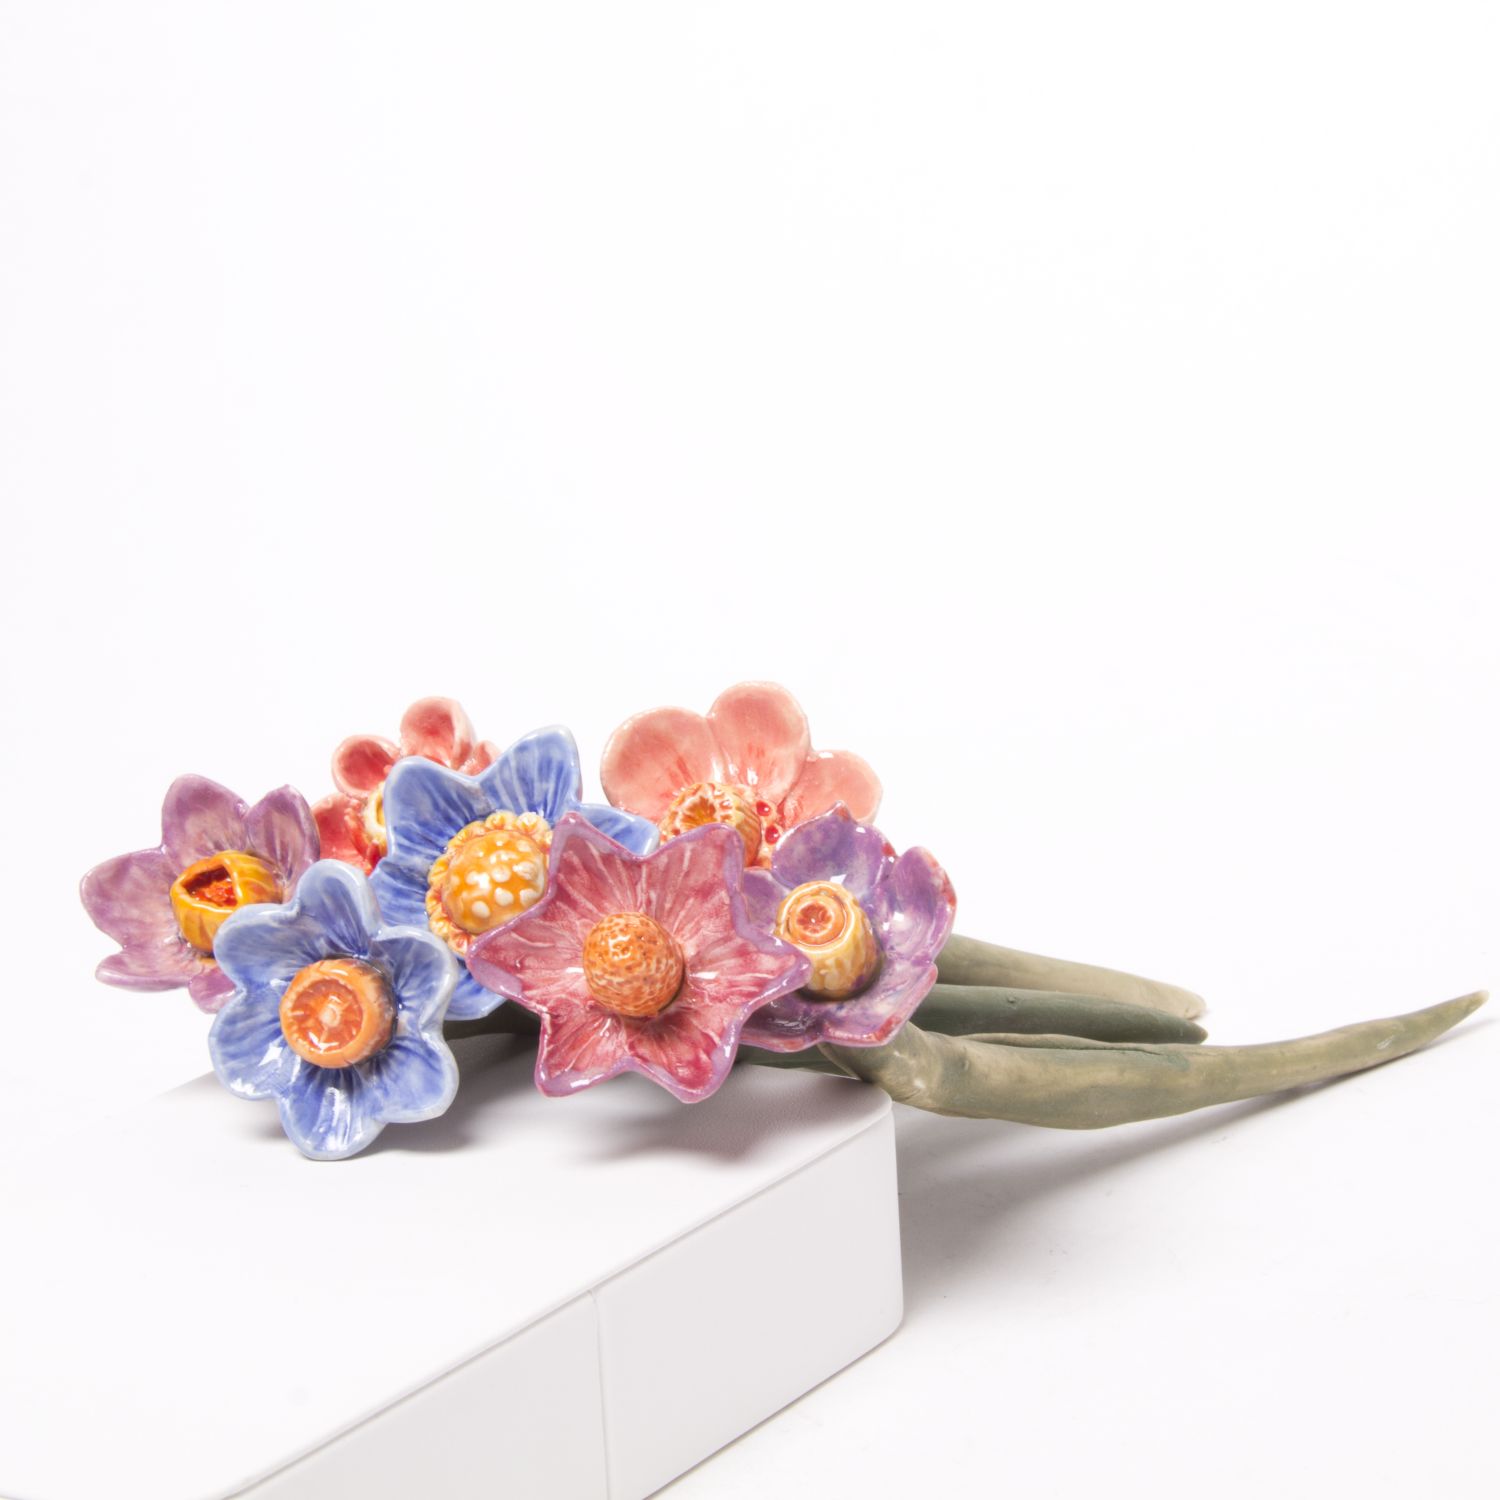 Eekta Trienekens: Narcissus Flowers (Each sold separately) Product Image 1 of 7